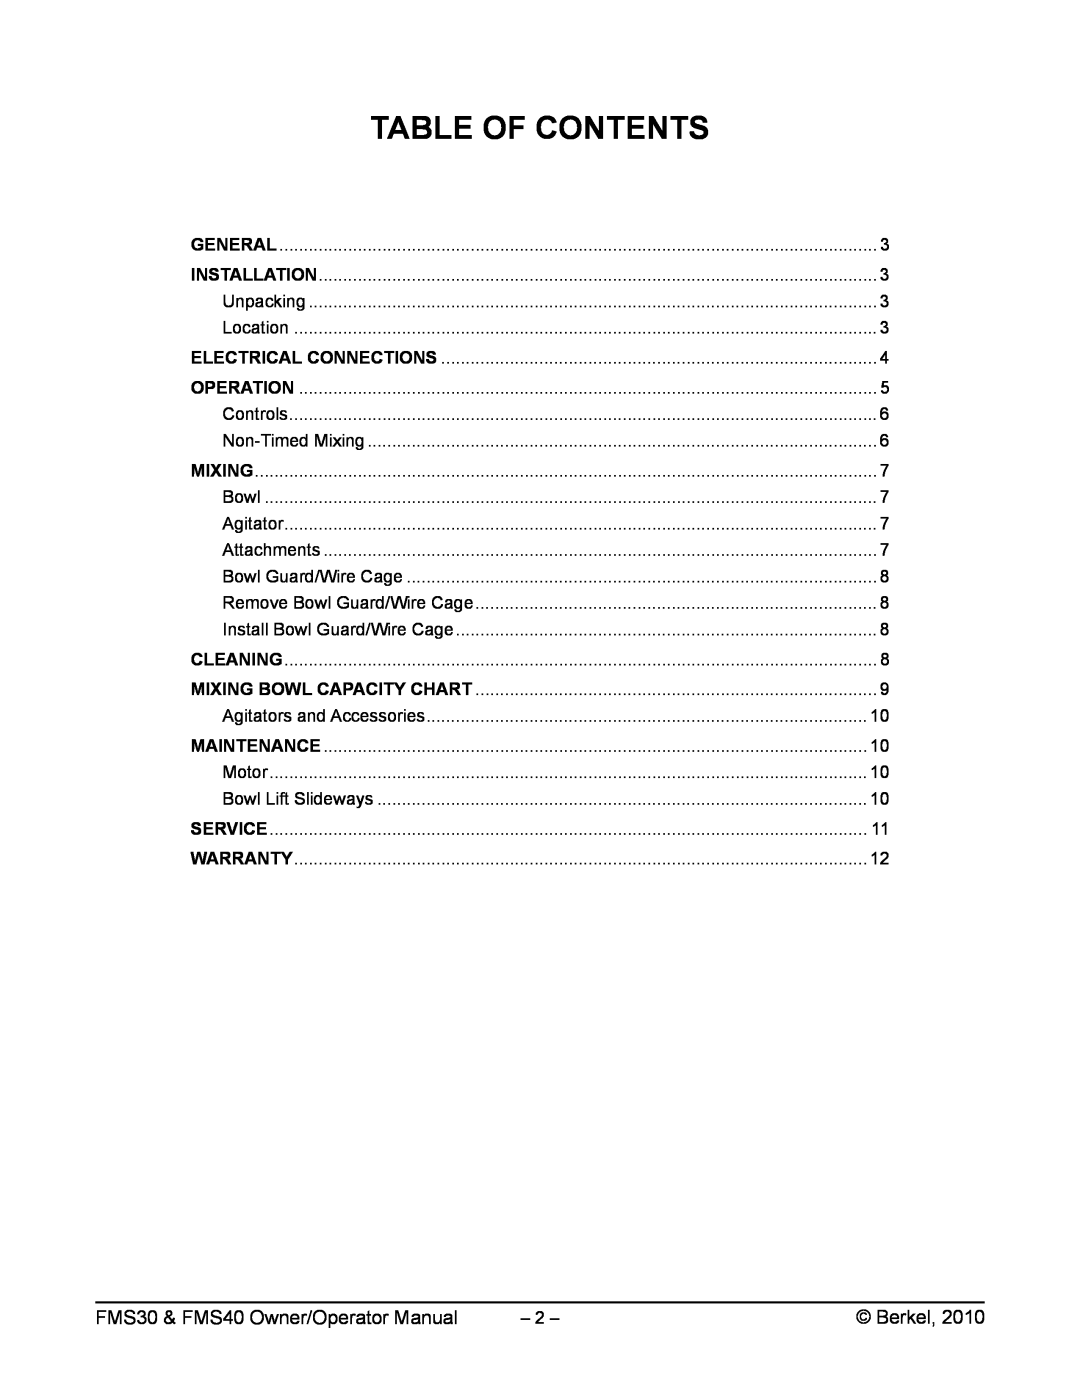 Berkel manual Table Of Contents, FMS30 & FMS40 Owner/Operator Manual, Berkel 